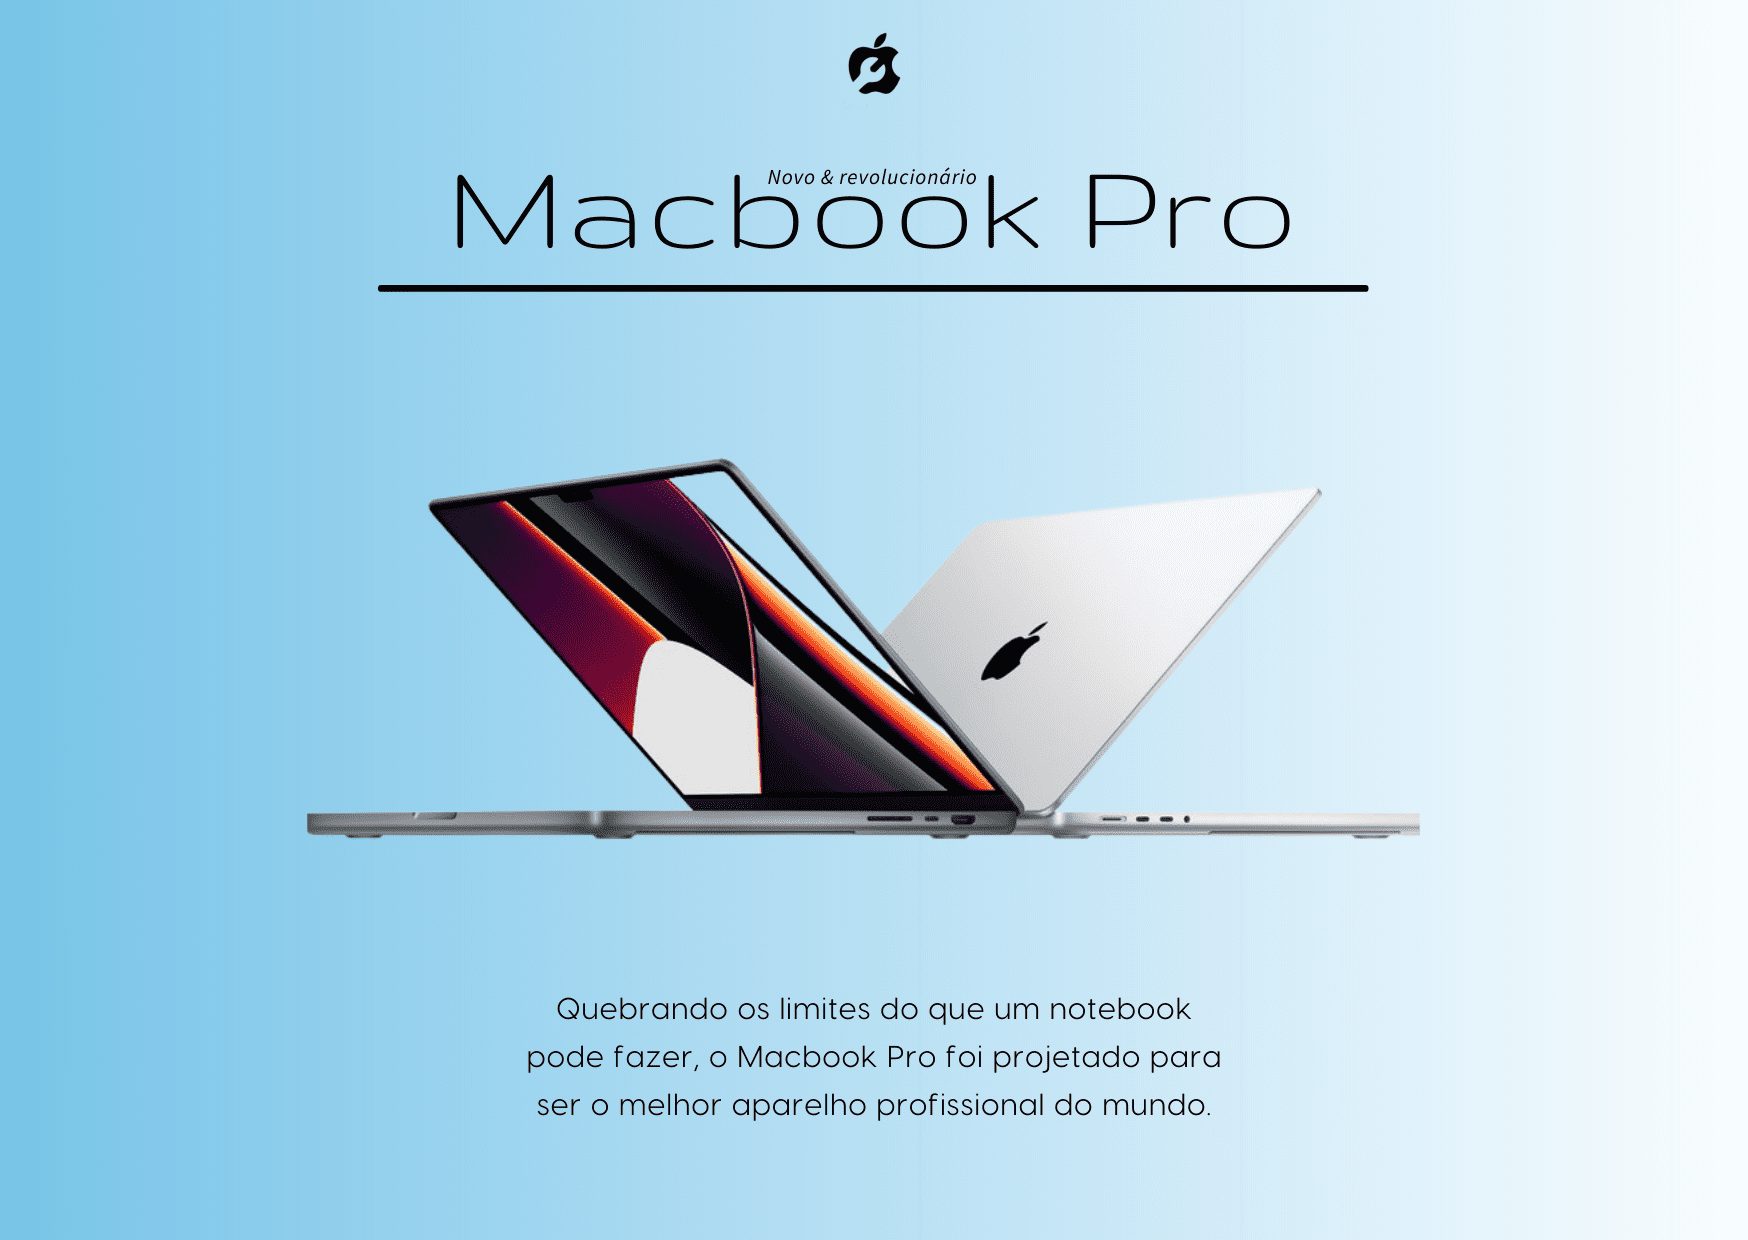 Conheça o novo e revolucionário Macbook Pro